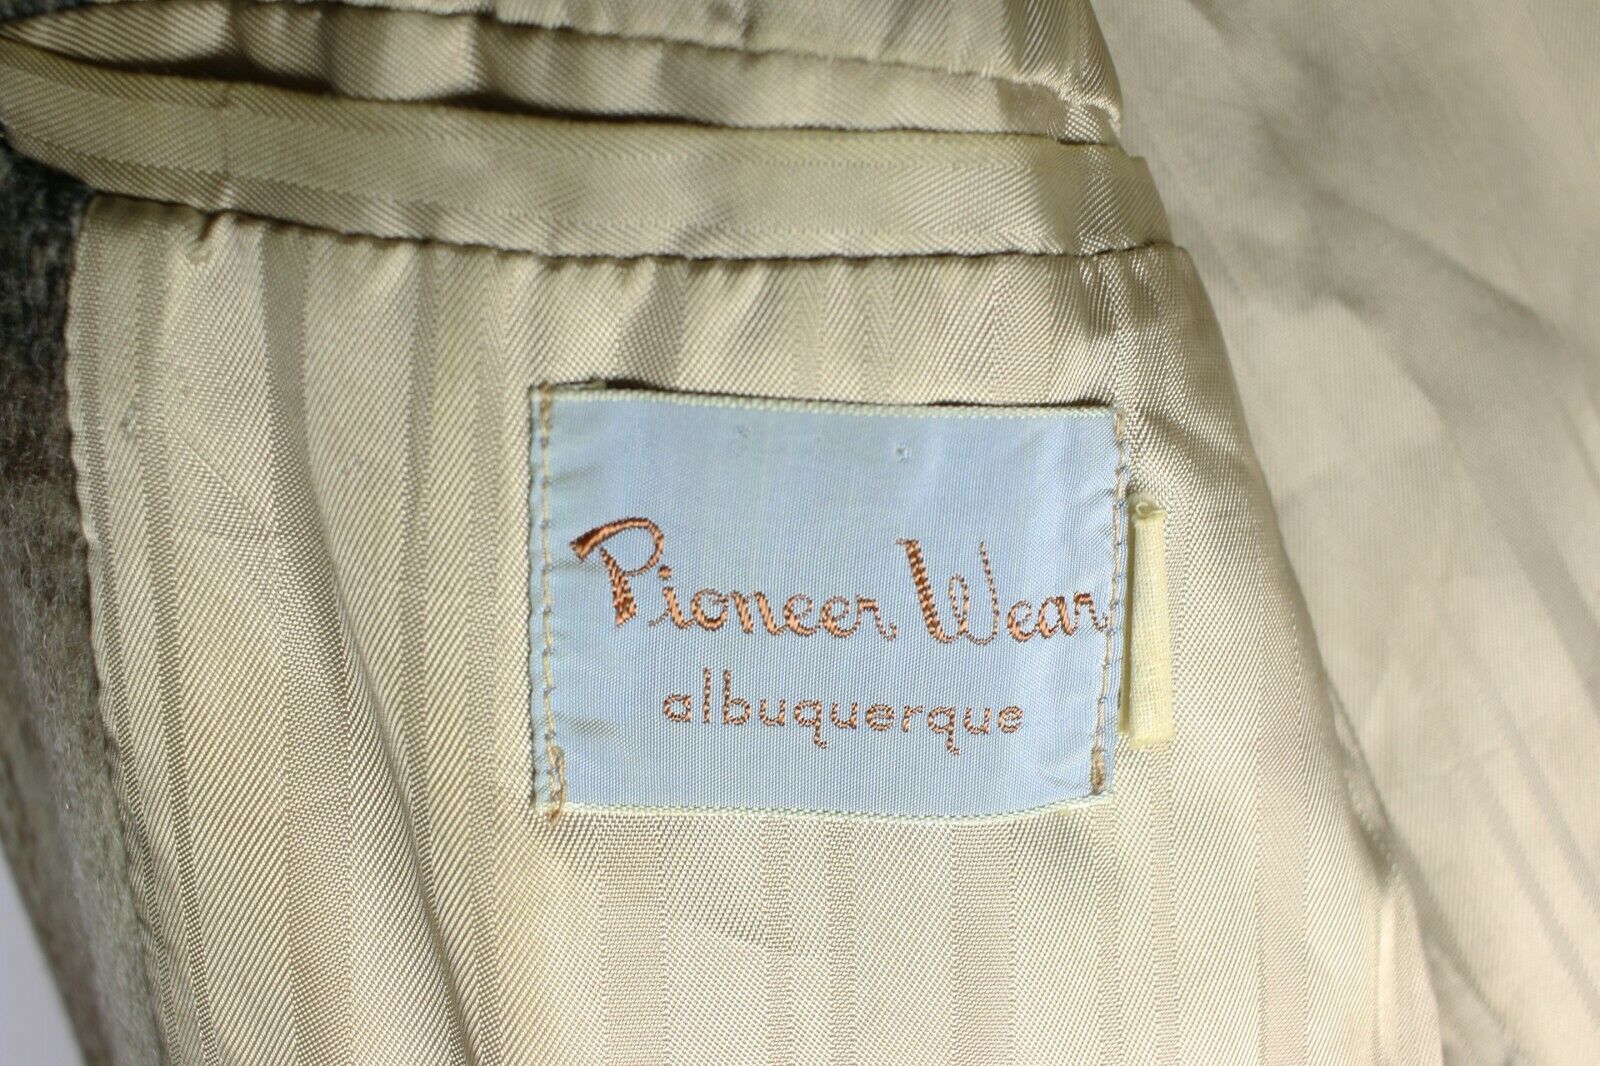 Vintage Pioneer Wear Jacket